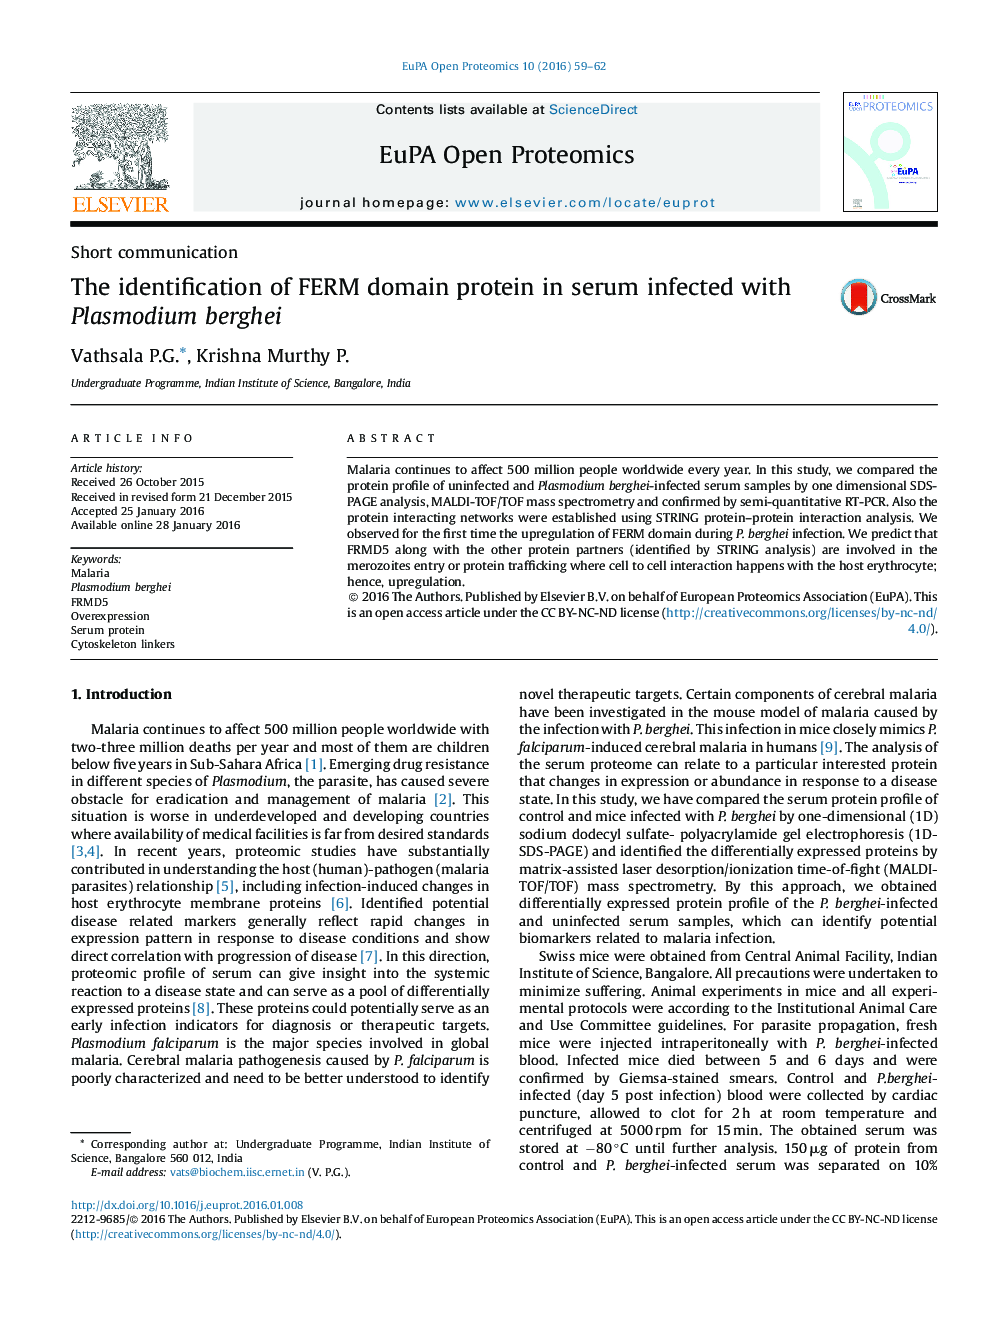 شناسایی پروتئین دامنه FERM در سرم آلوده به پلاسمودیوم berghei